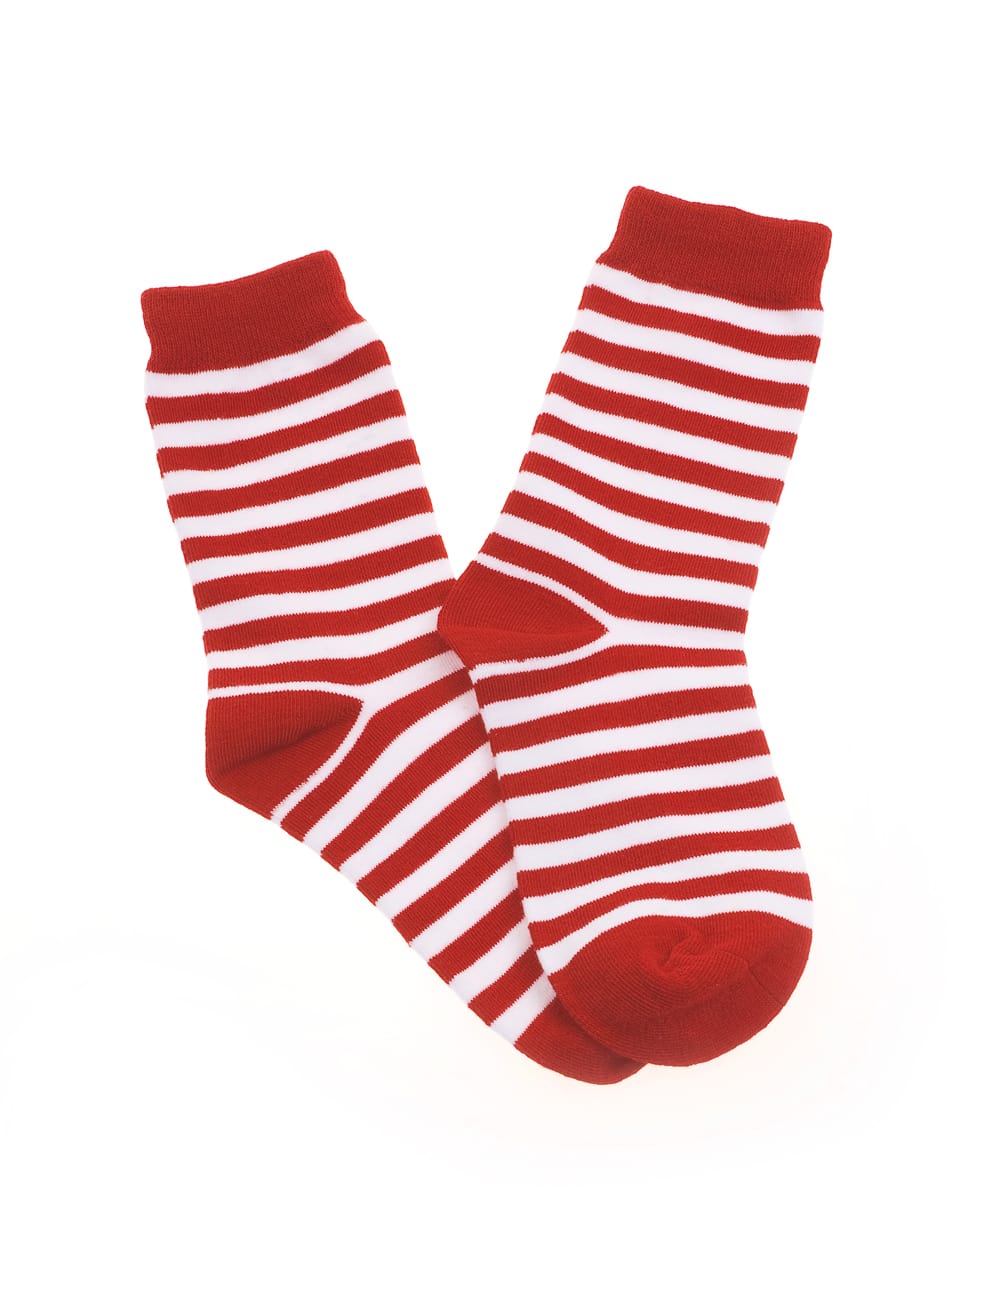 Socken gestreift rot/weiß 41-46